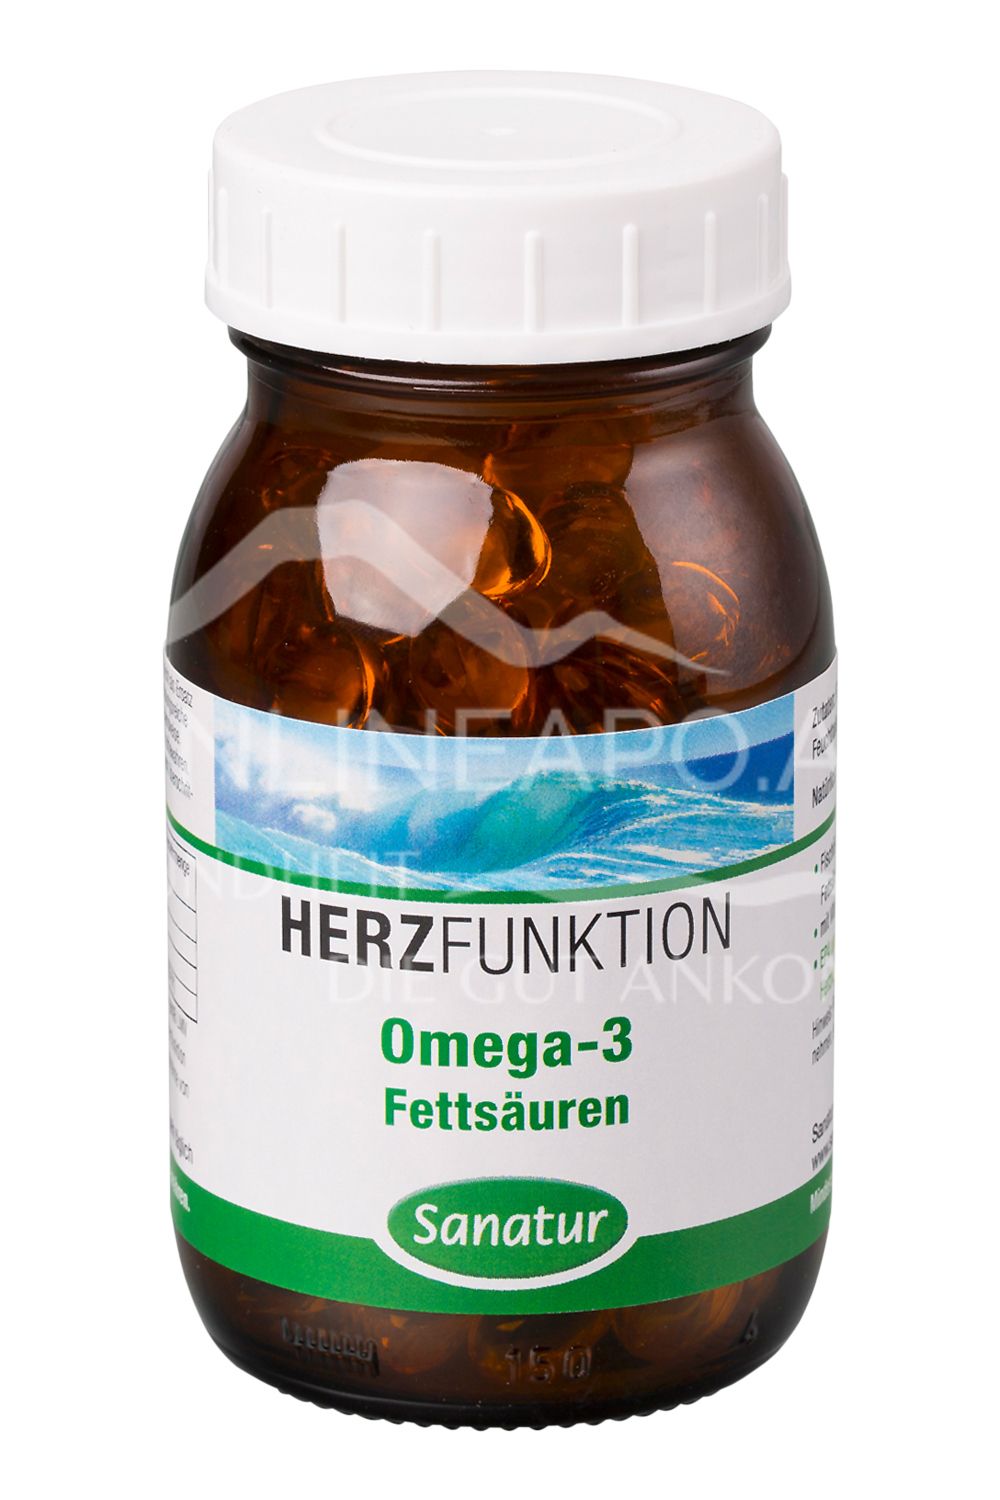 Sanatur Omega-3 Fettsäuren Fischöl Kapseln